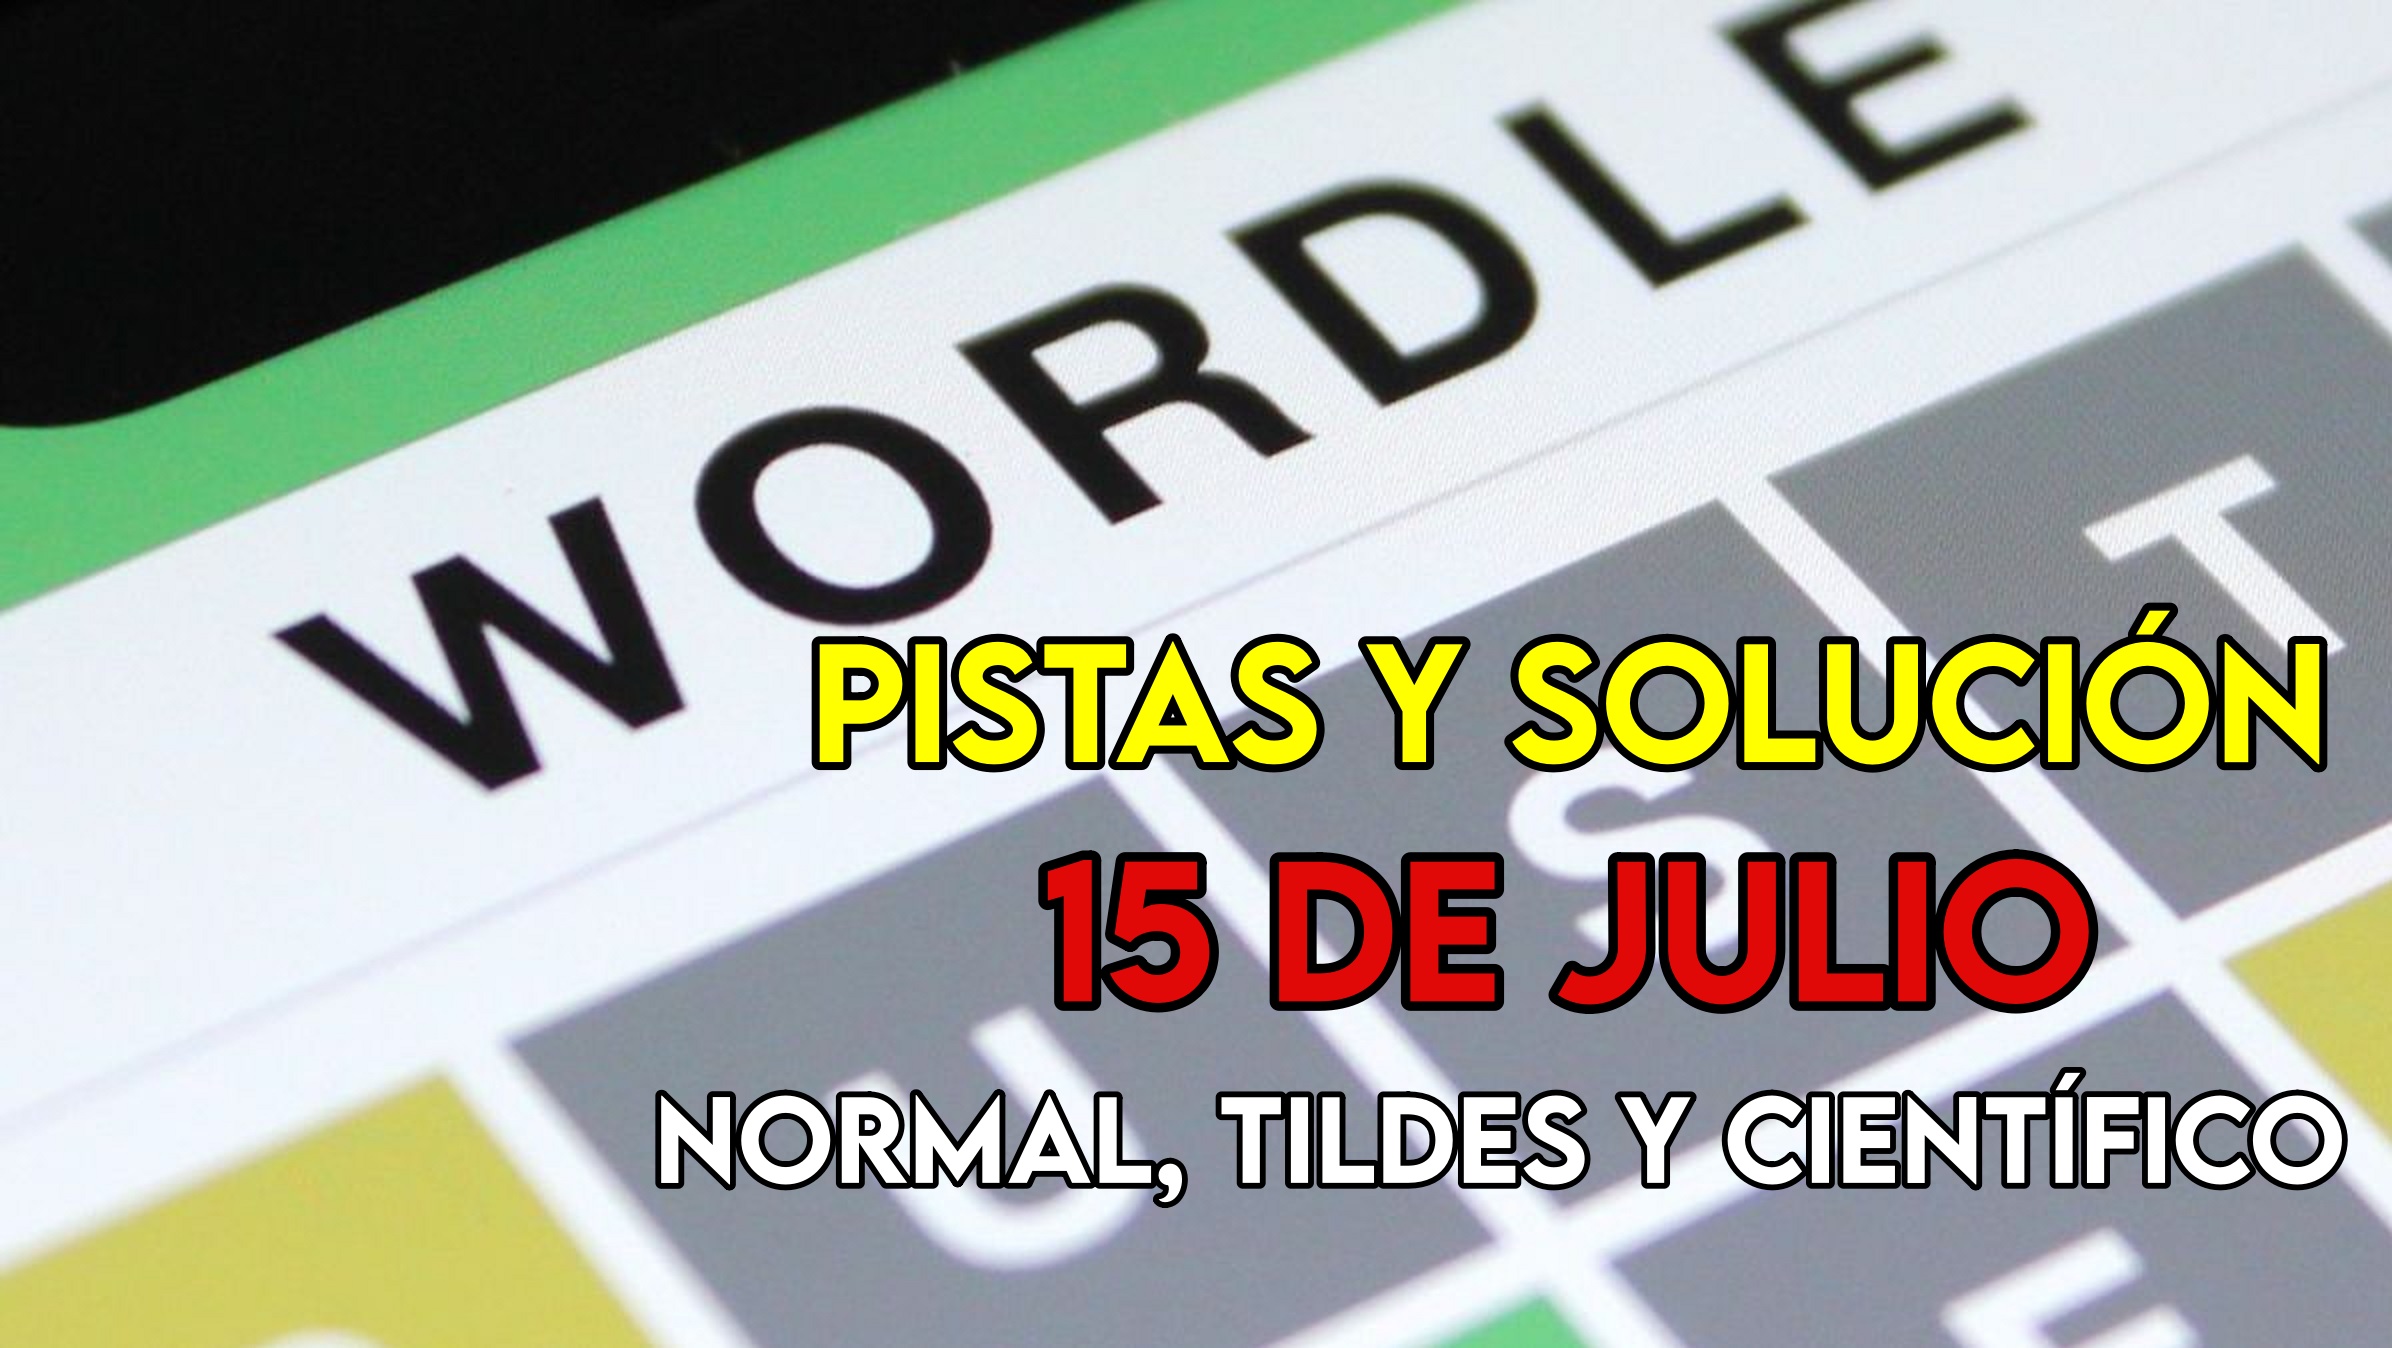 Wordle en español, científico y tildes para el reto de hoy 15 de julio: pistas y solución